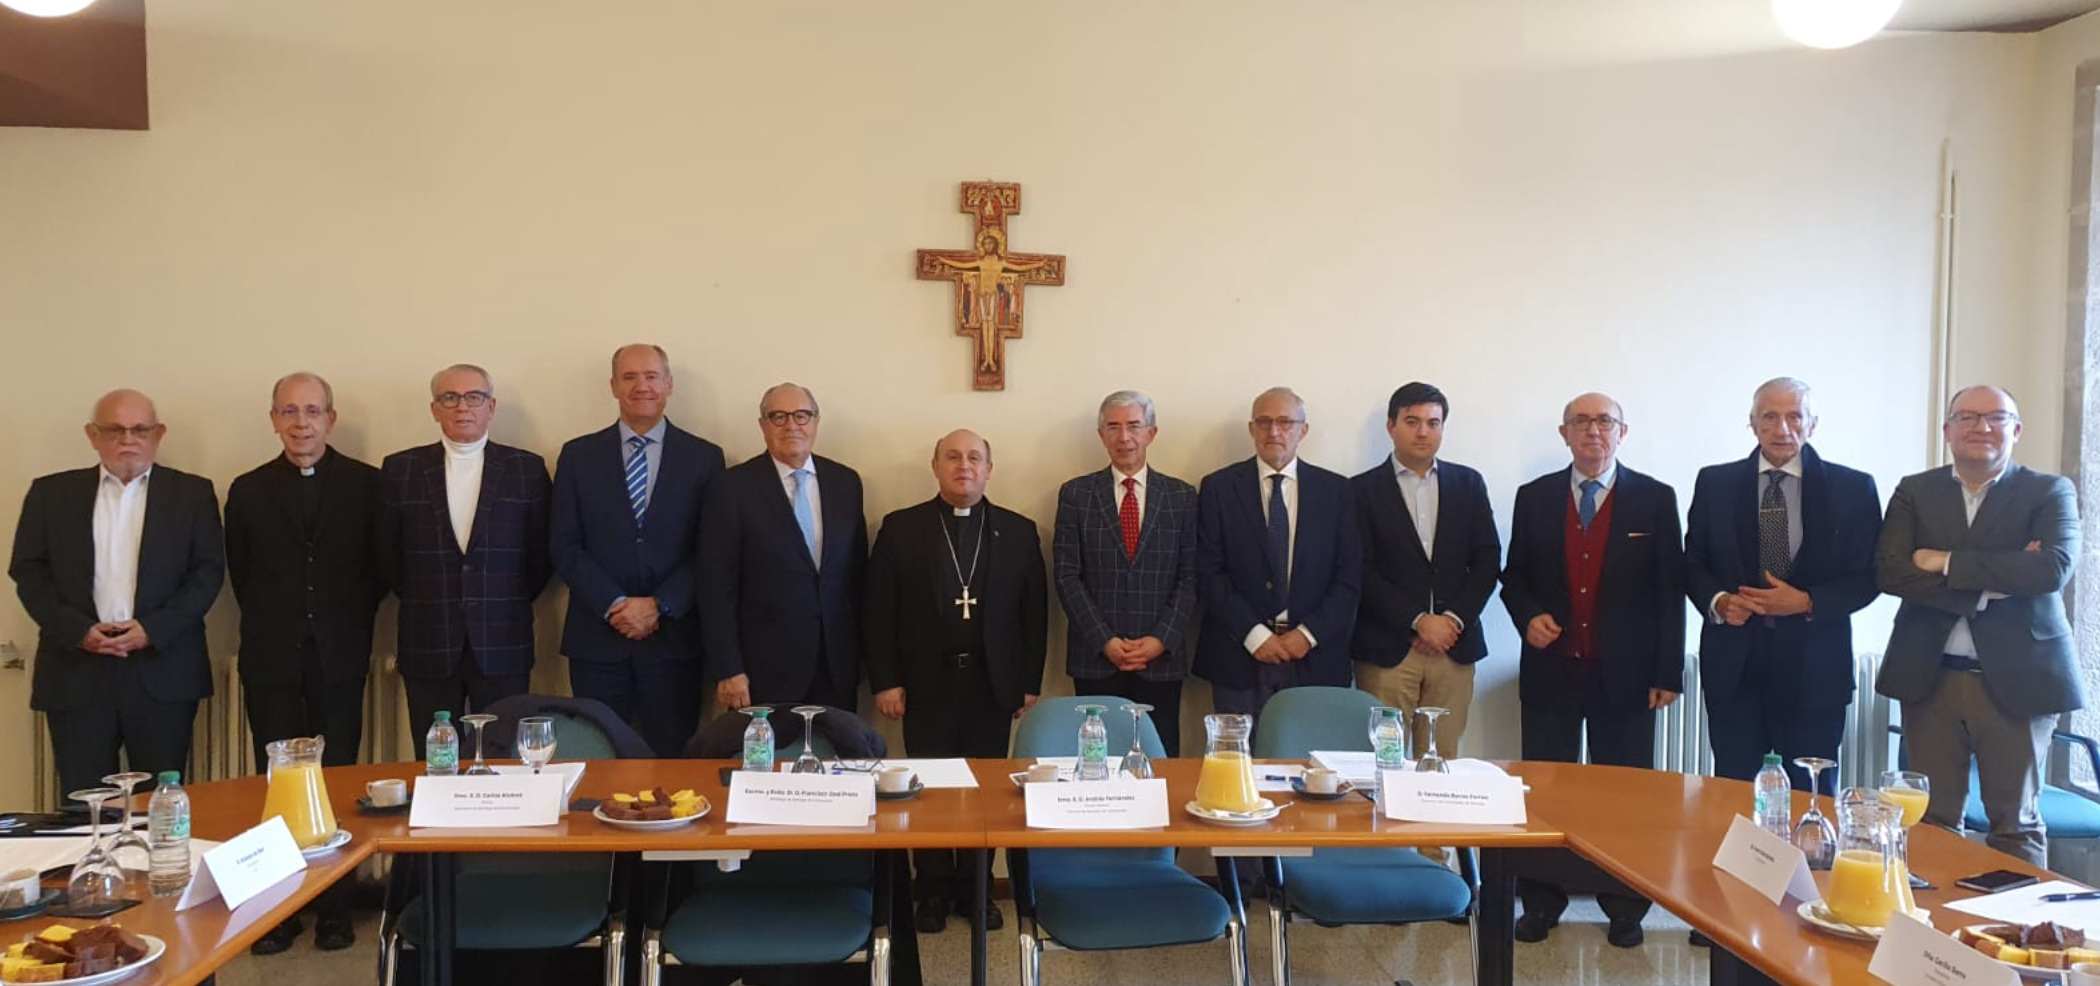 Comité organizador presidido por el arzobispo de Santiago Francisco Prieto.